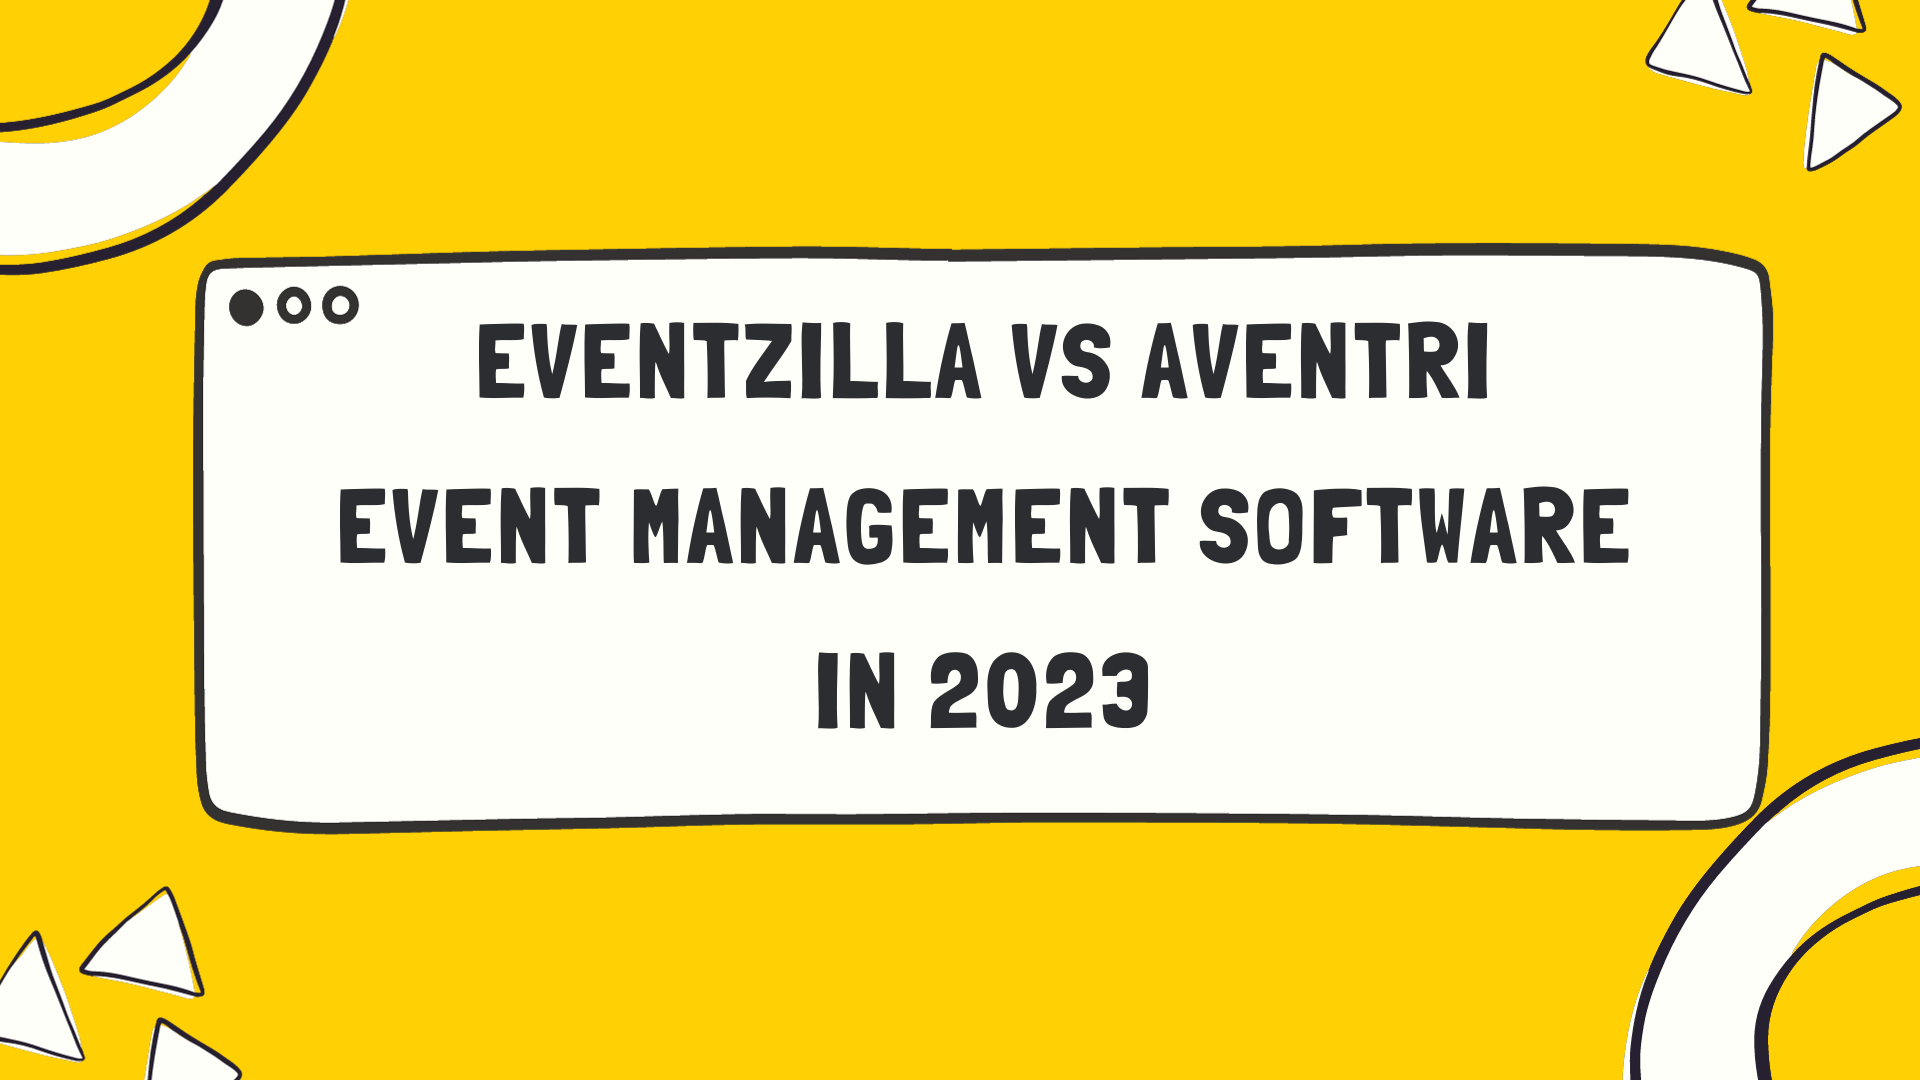 Eventzilla and Aventri